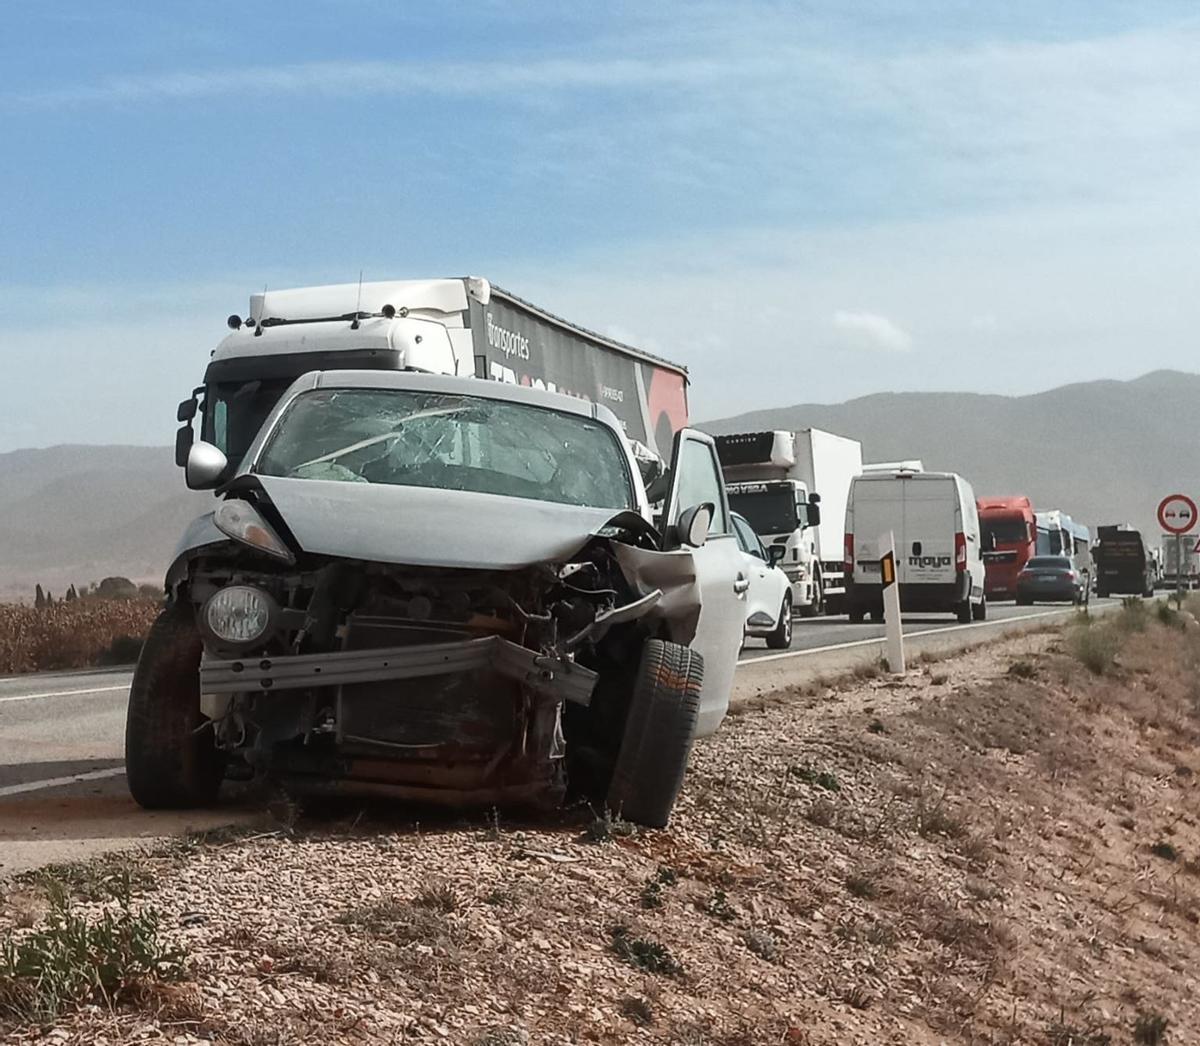 Uno de los coches implicados en el accidente de tráfico que causó el viento en Yecla.